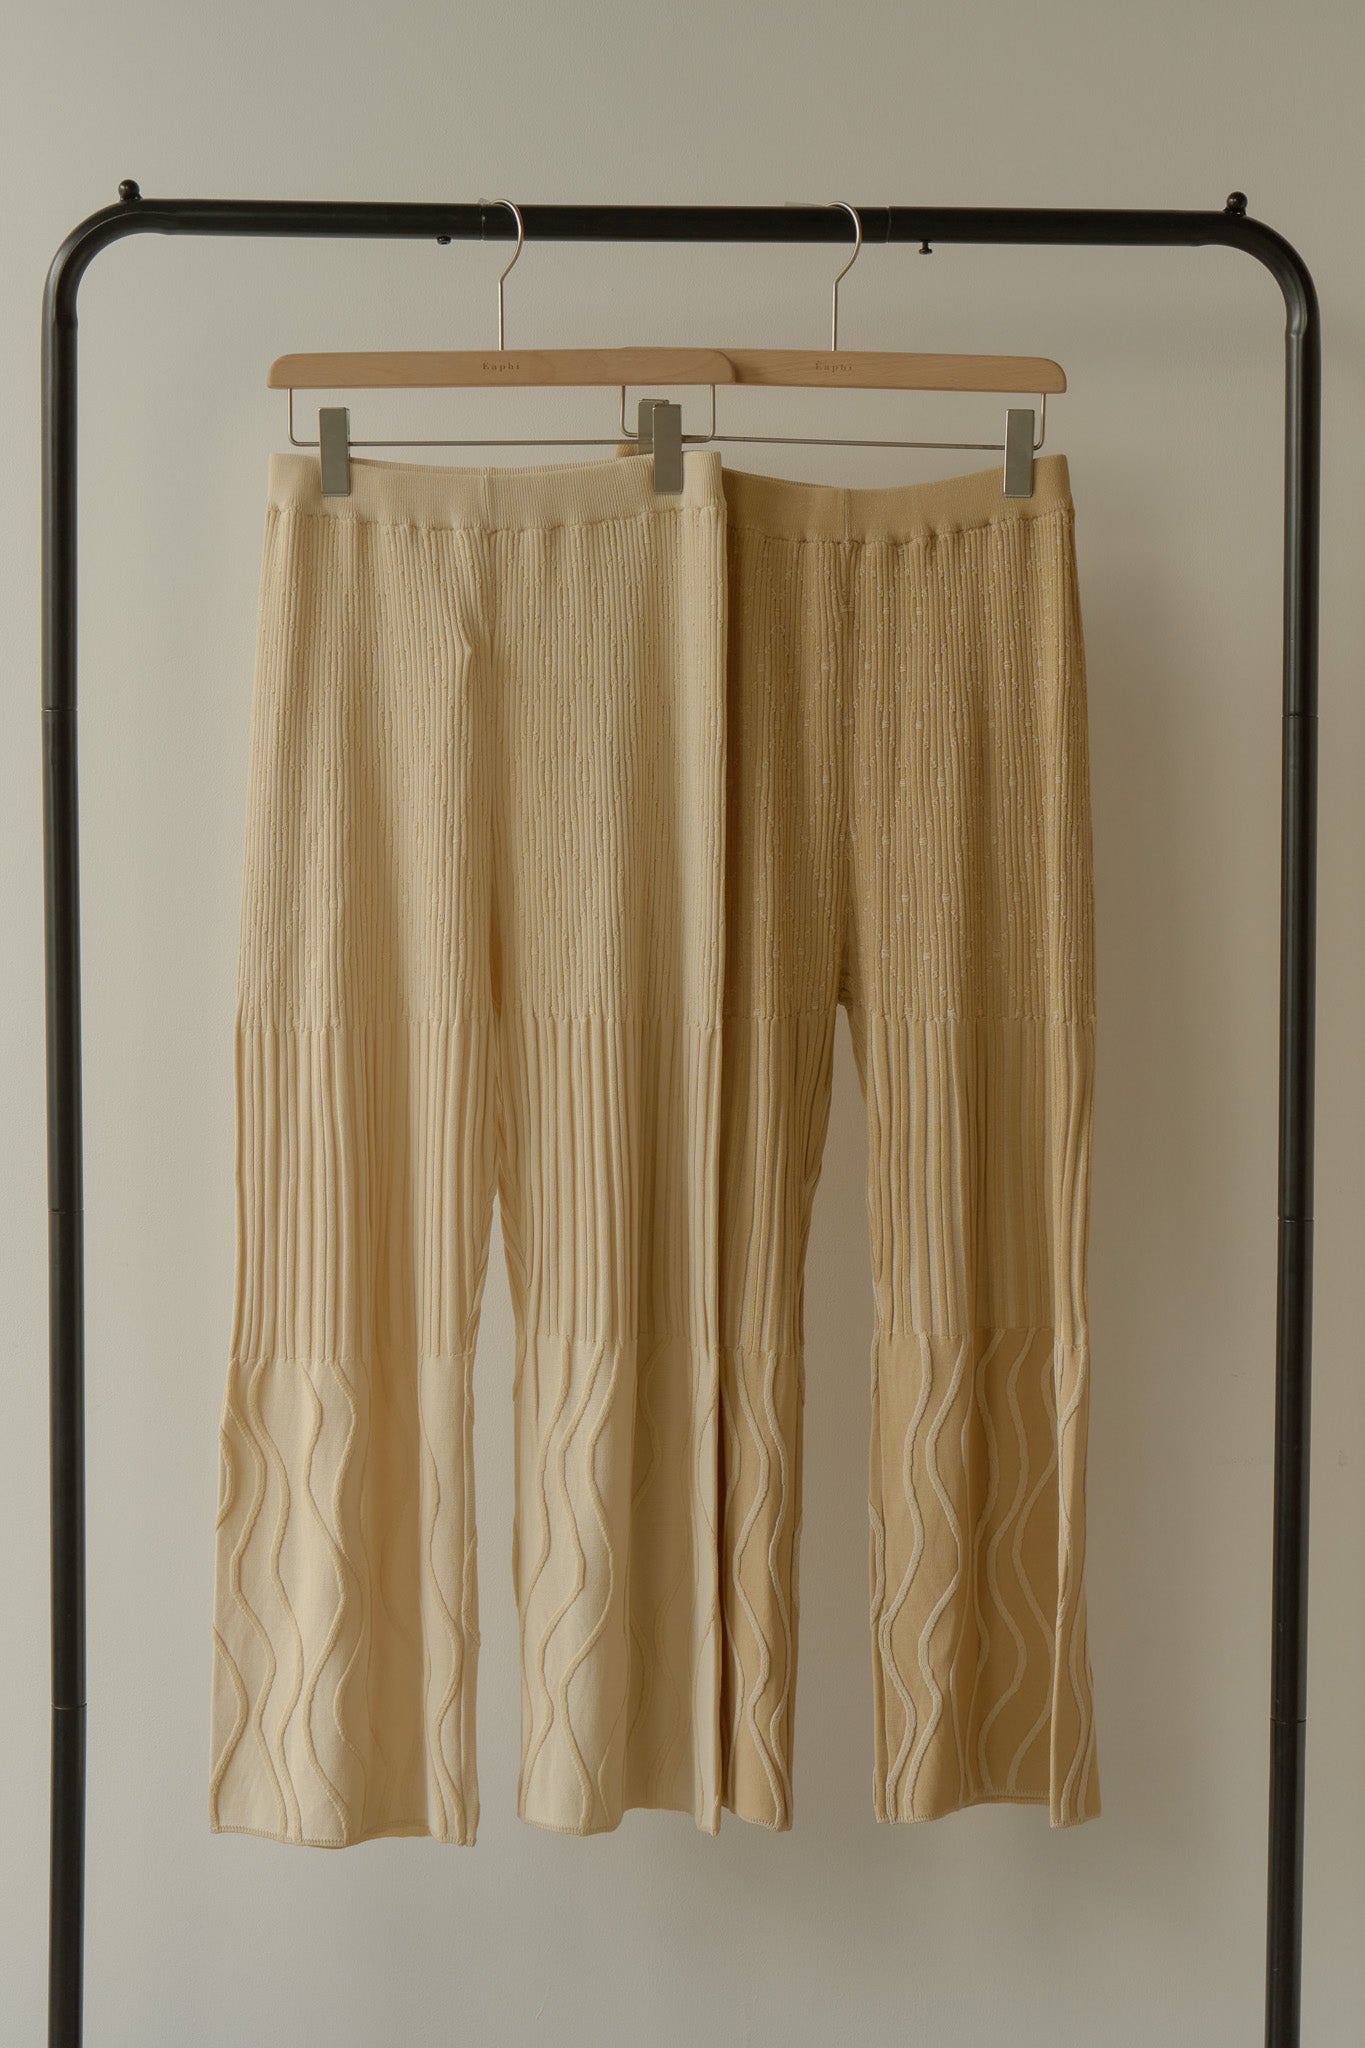 【こさま専用】eaphi wave design knitpants アイボリー